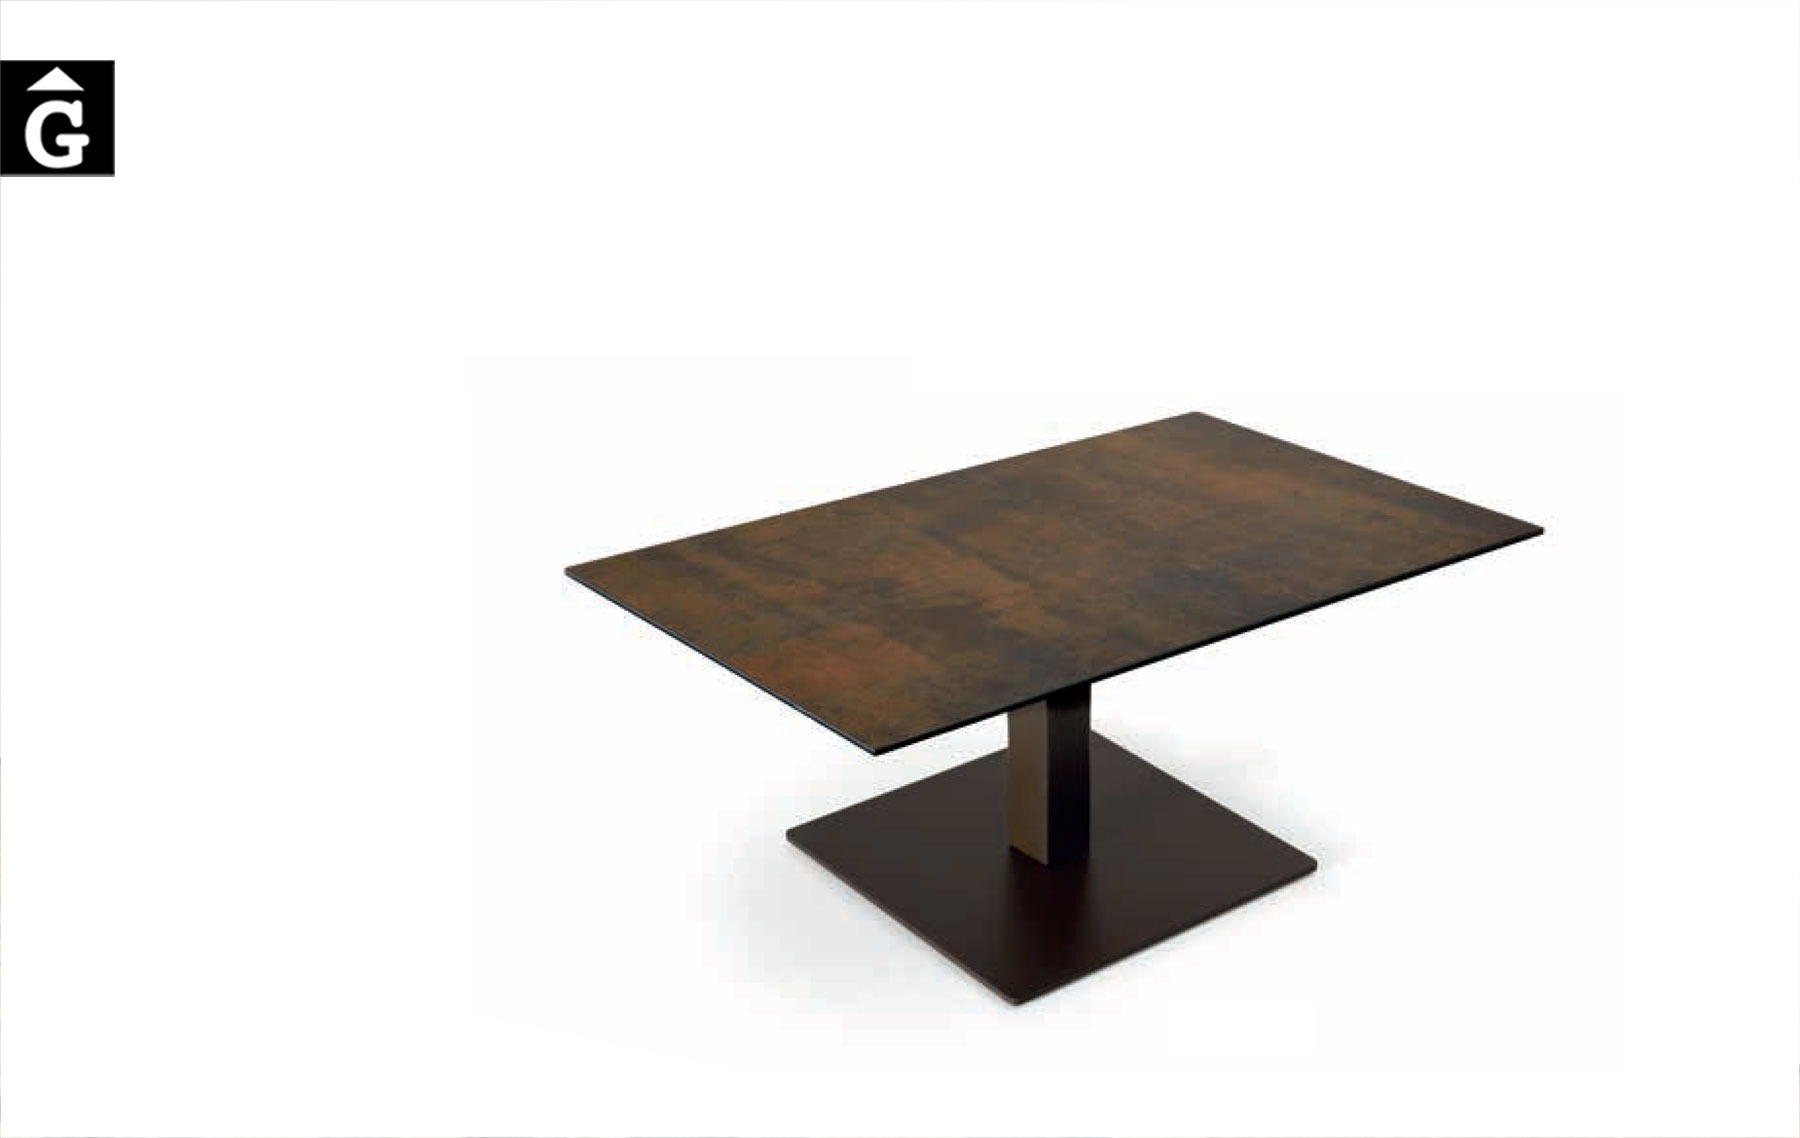 Taula-centre-Square-Pure-Designs-mobles-Gifreu